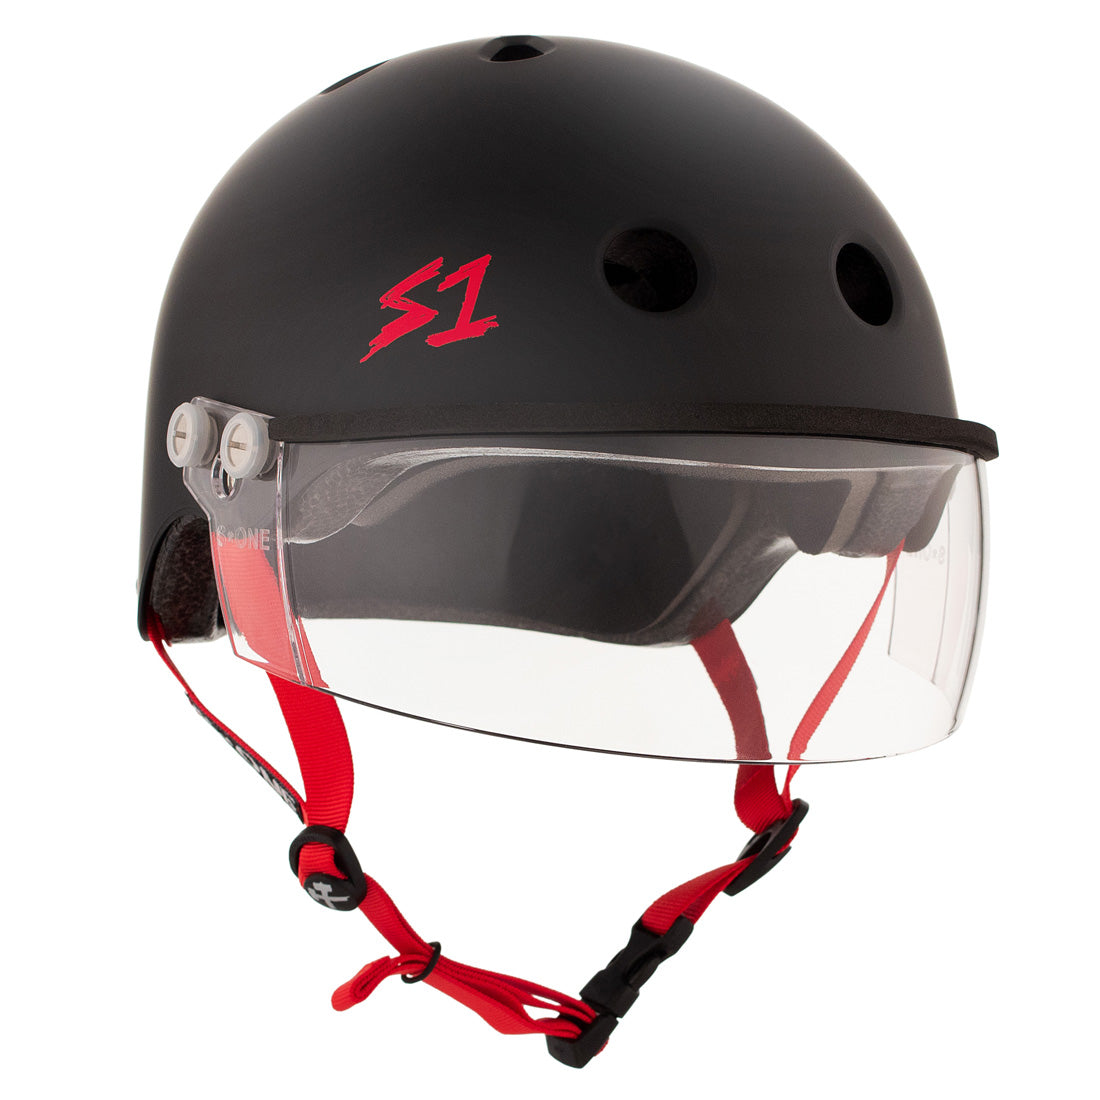 S-One Visor Lifer Helmet - Black/Red Matte Helmets